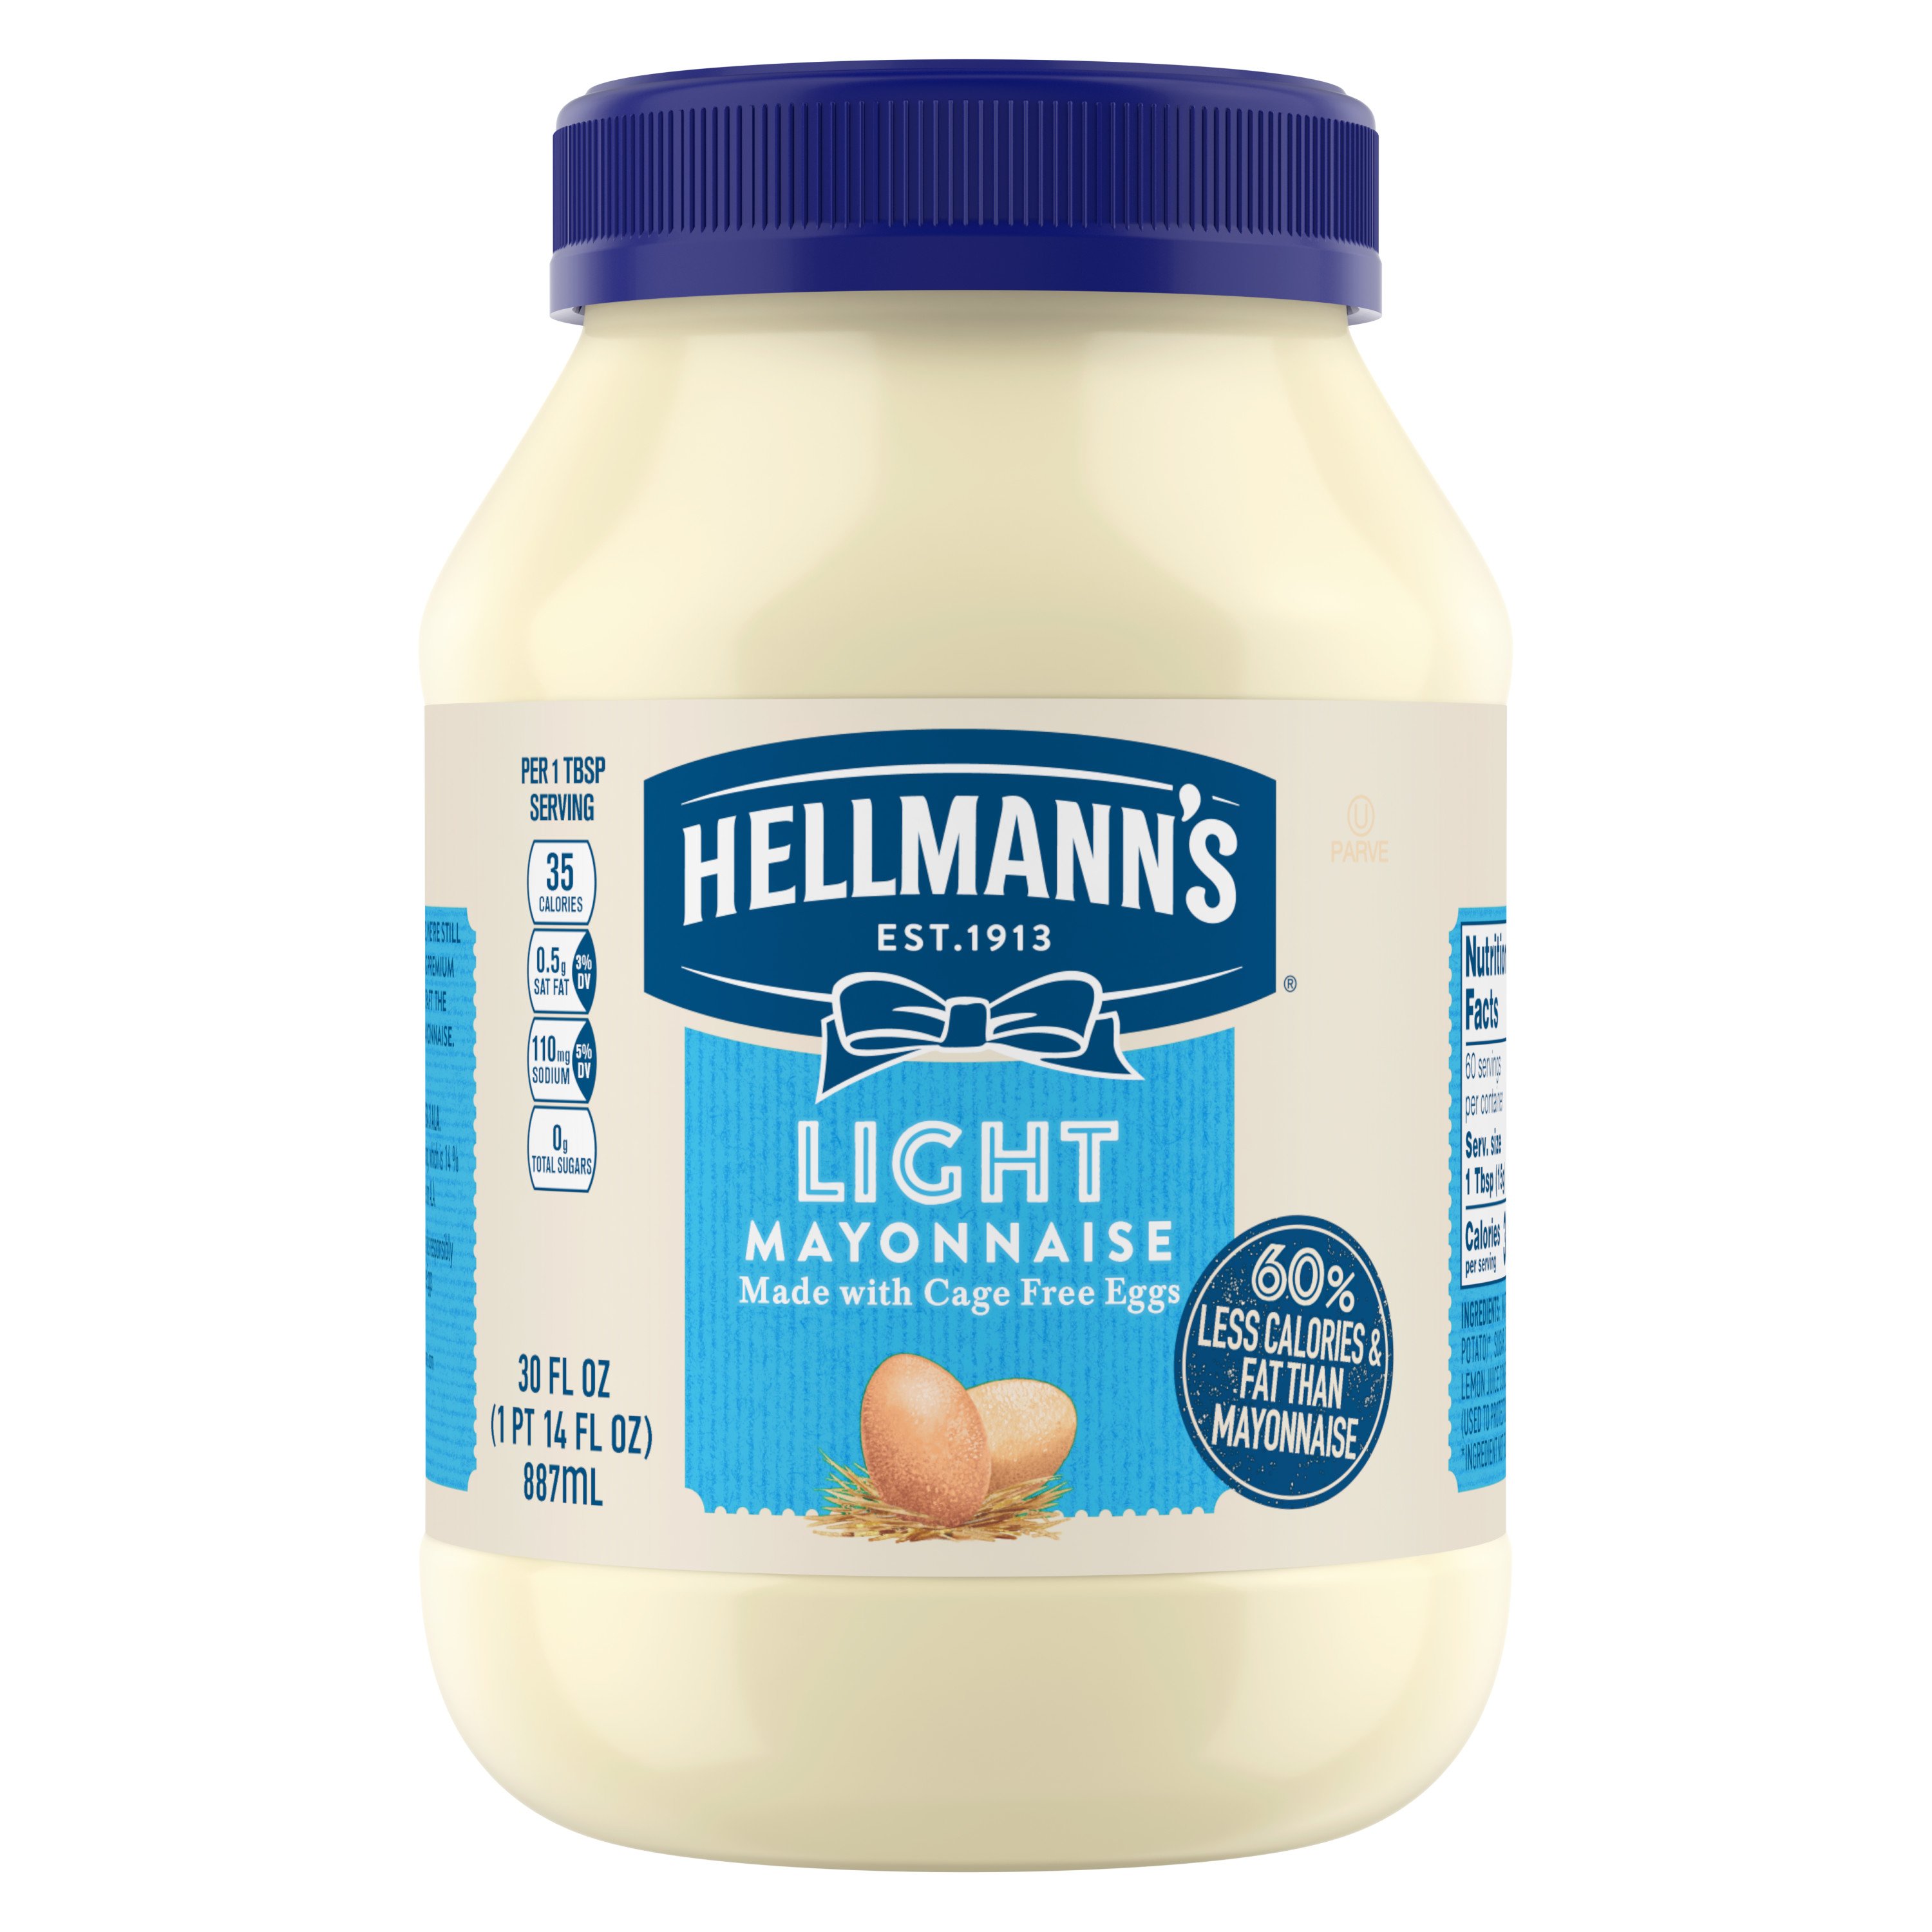 Hellmann's Mayonnaise Light - Shop Mayonnaise & Spreads H-E-B